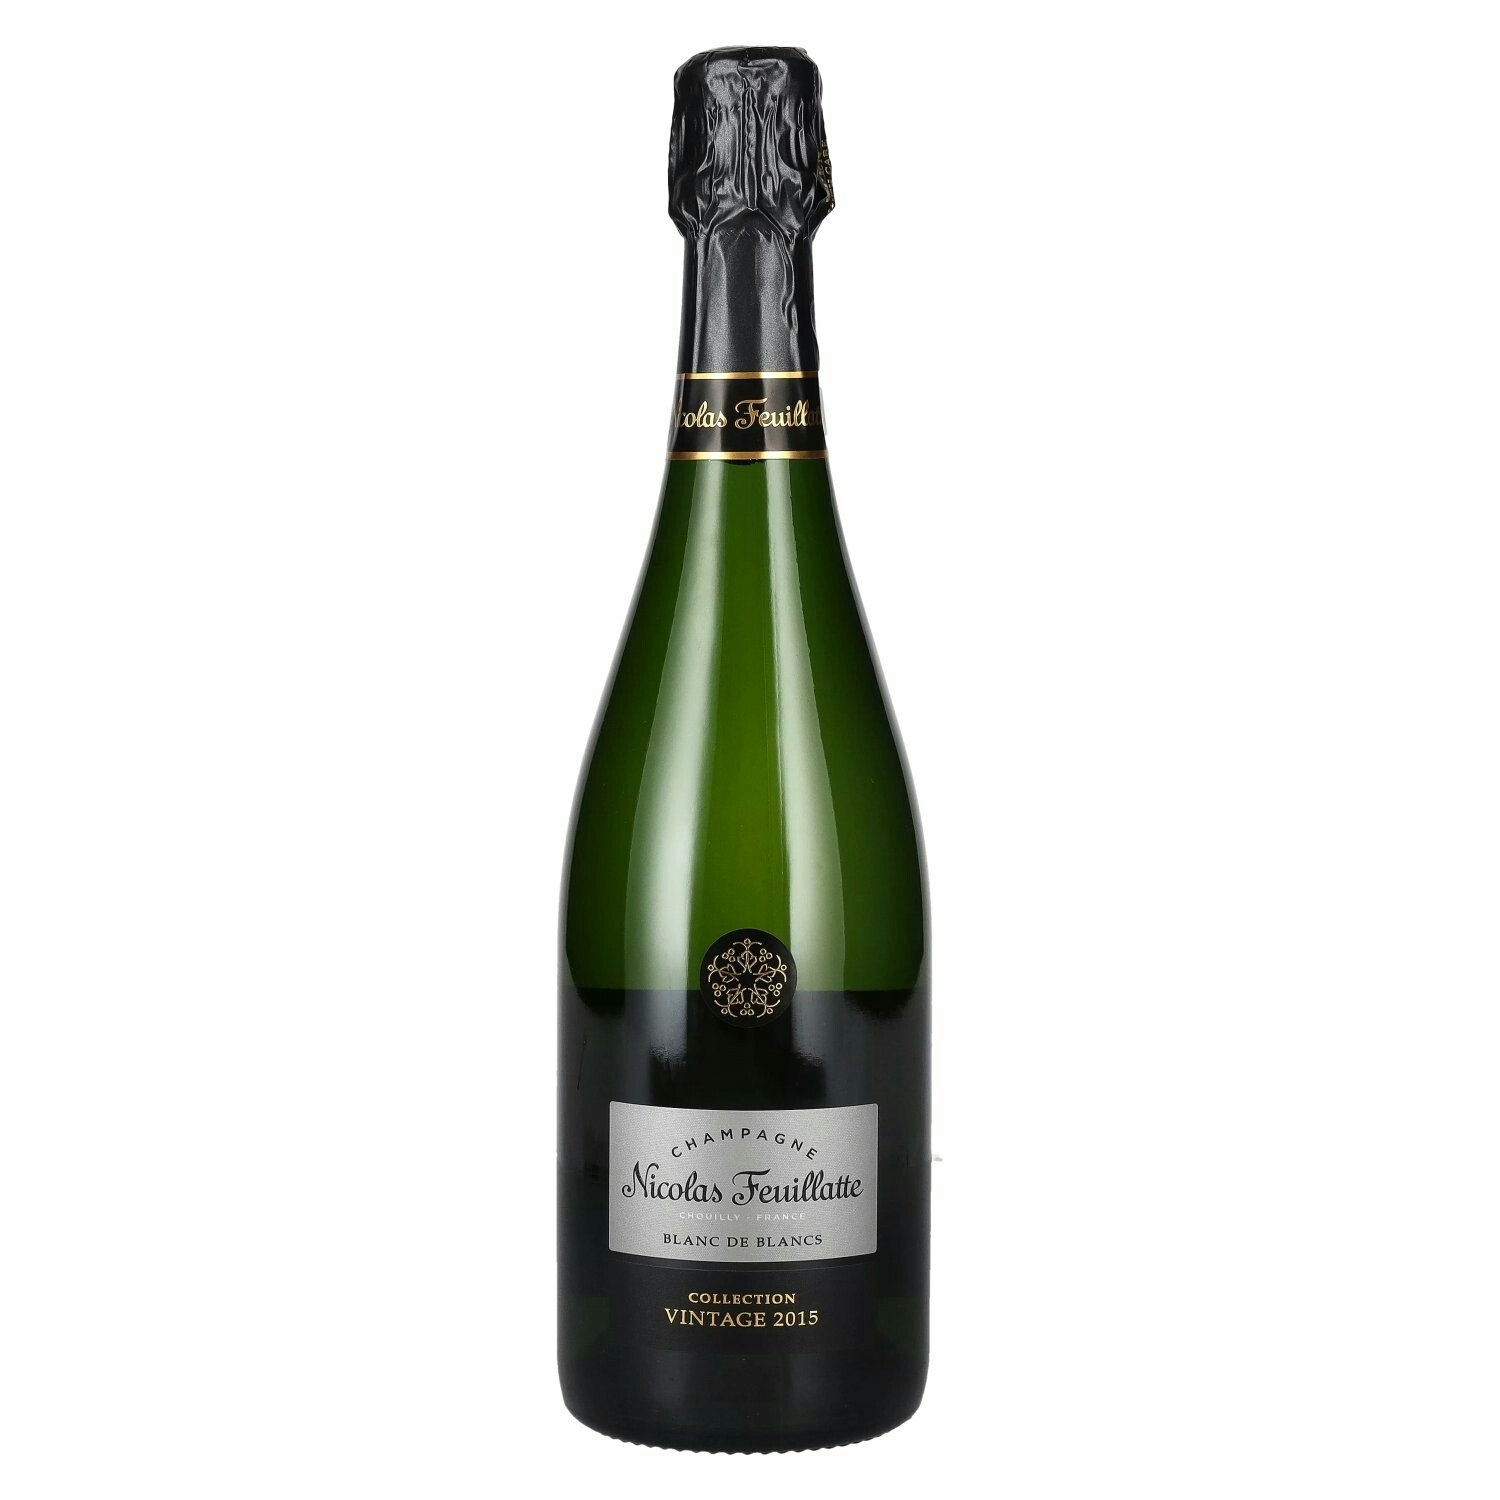 Nicolas Feuillatte Champagne Blanc de Blancs Collection Vintage 2015 12% Vol. 0,75l